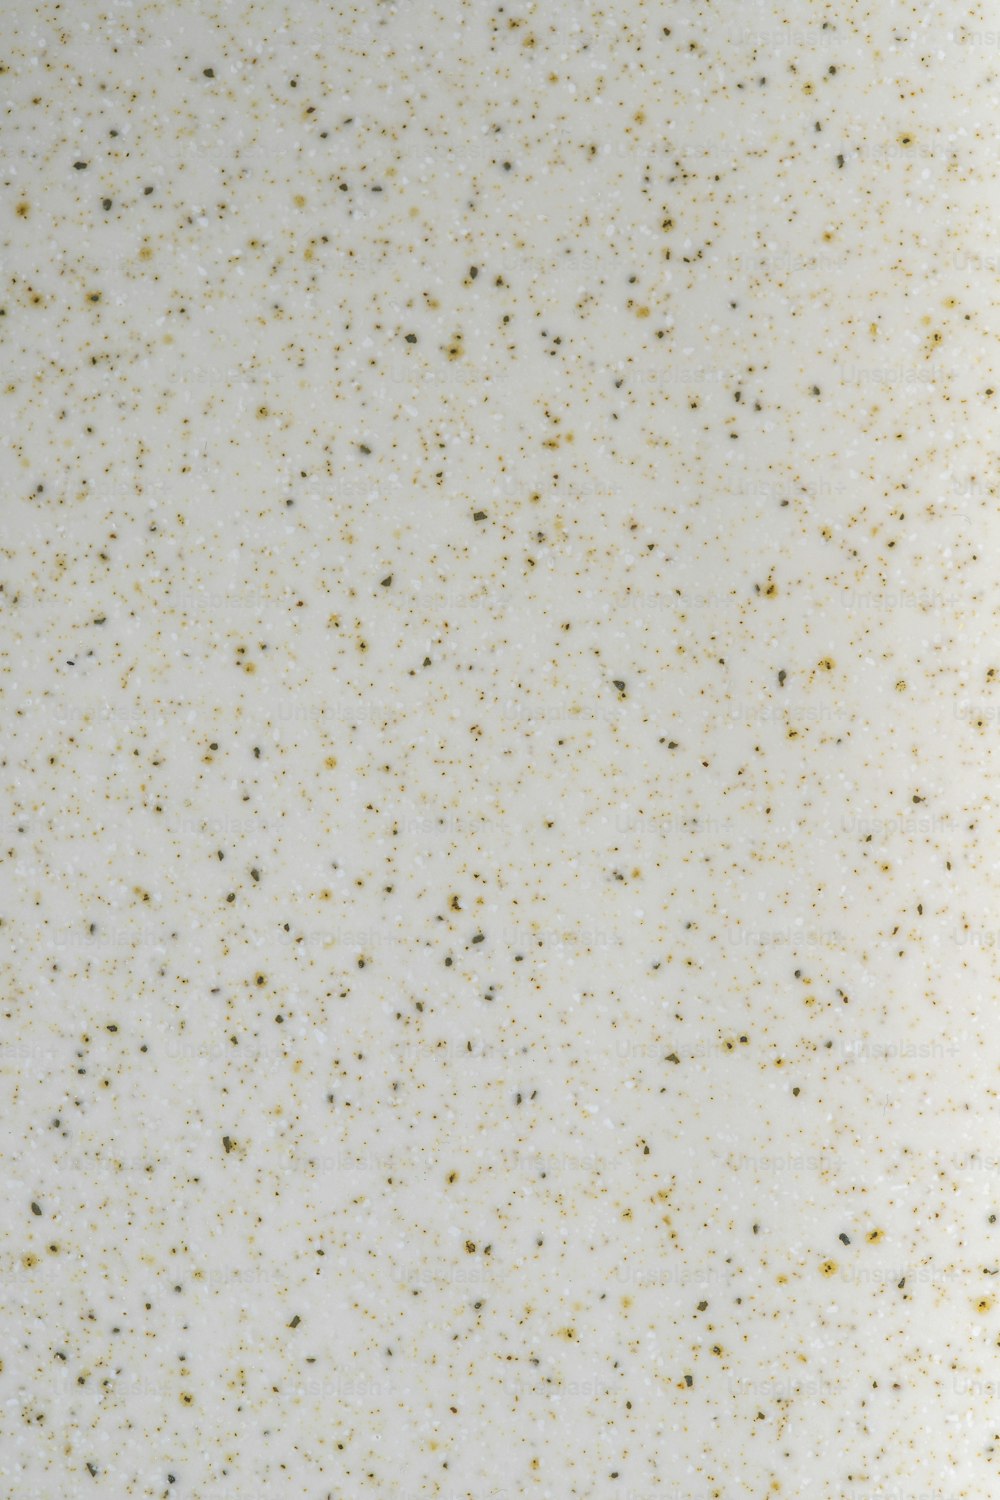 Un primer plano de una superficie blanca con manchas doradas